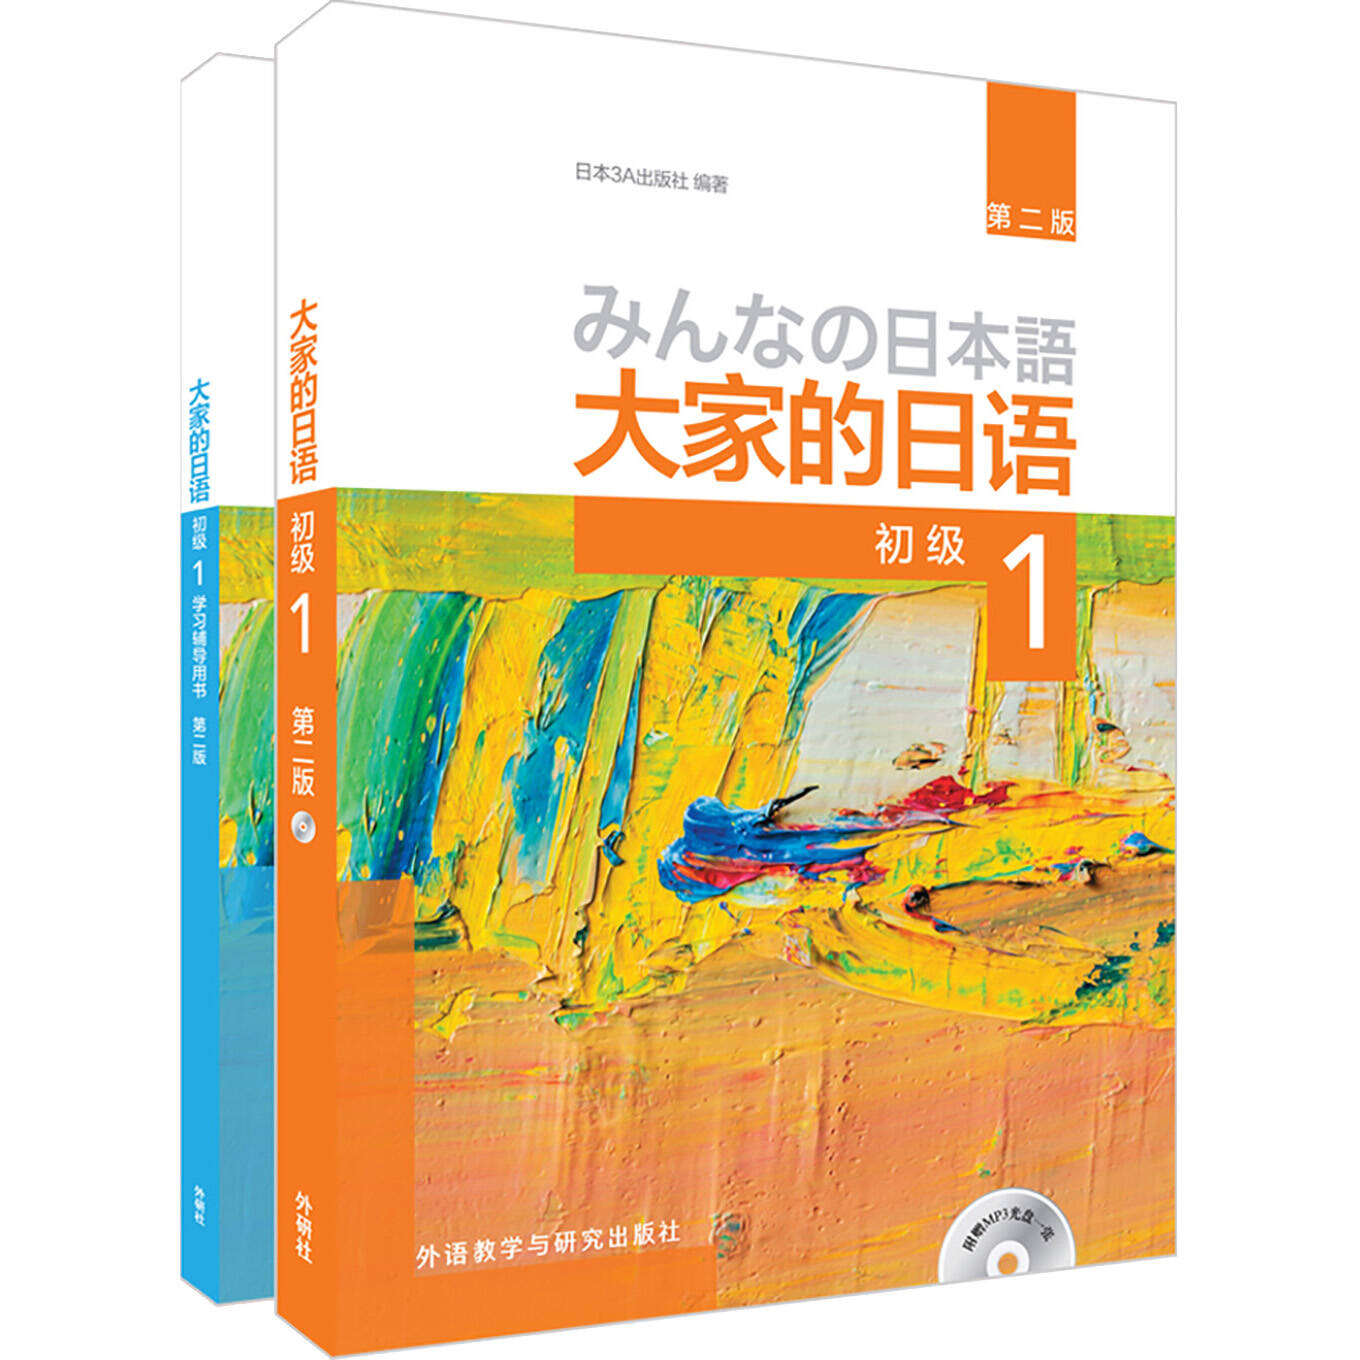 十款日语书籍助你高效学日语